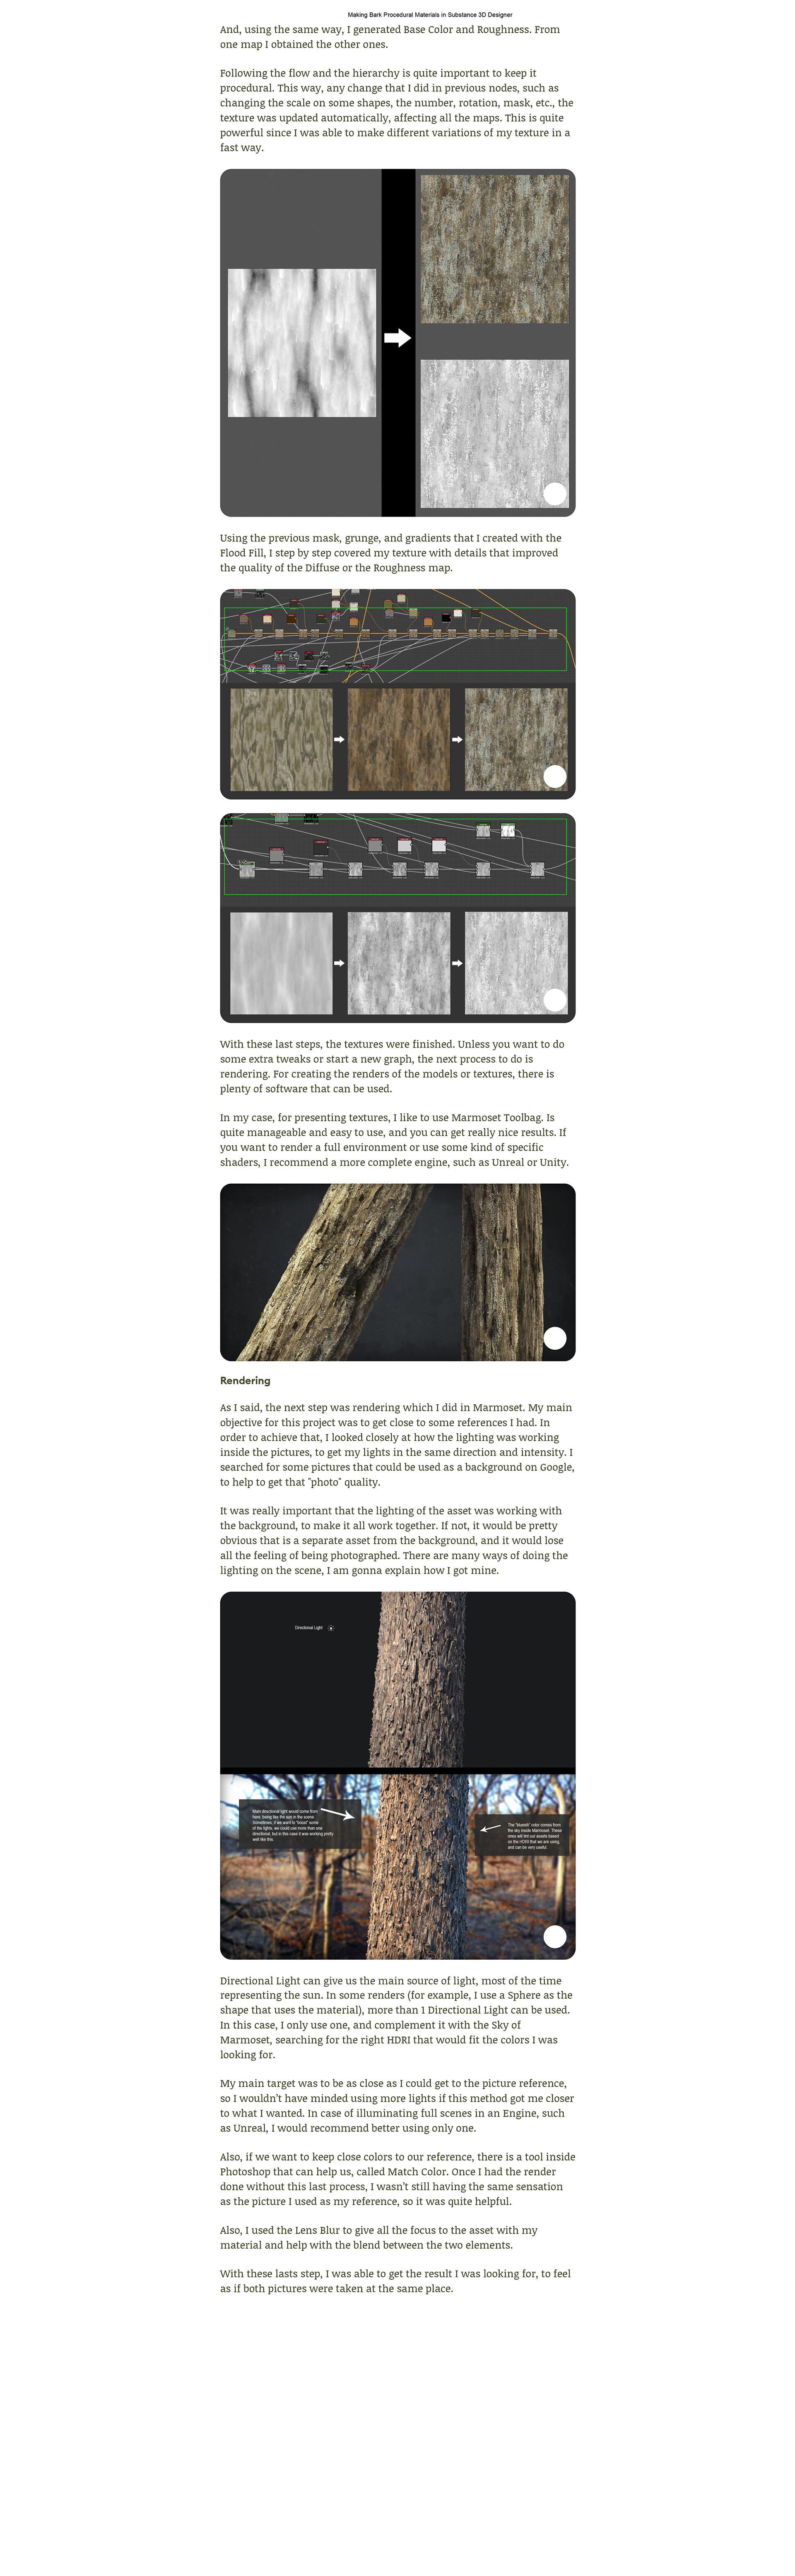 Vật liệu vỏ gỗ PBR đã trở thành xu hướng mới trong ngành thiết kế. Để hiểu rõ hơn về ưu điểm của vật liệu này, hãy tham gia xem hình ảnh liên quan đến sản phẩm đầy tinh tế.